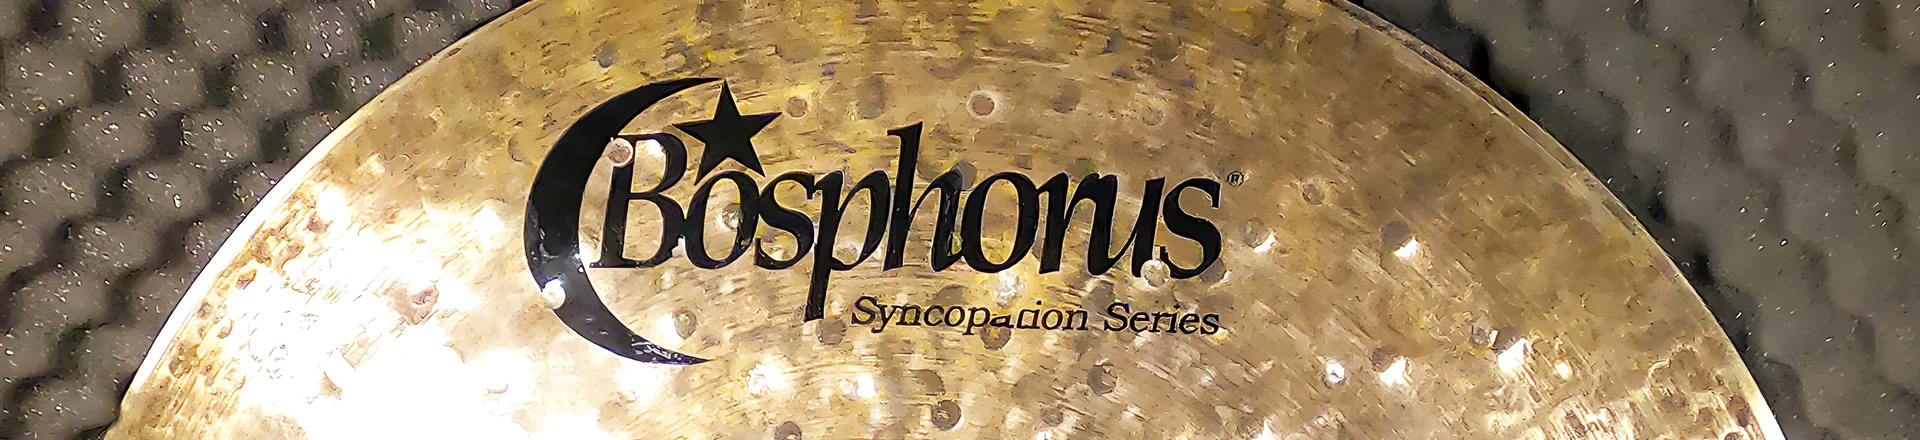 Robert Rasz pierwszym oficjalnym endorserem marki Bosphorus Cymbals w Polsce